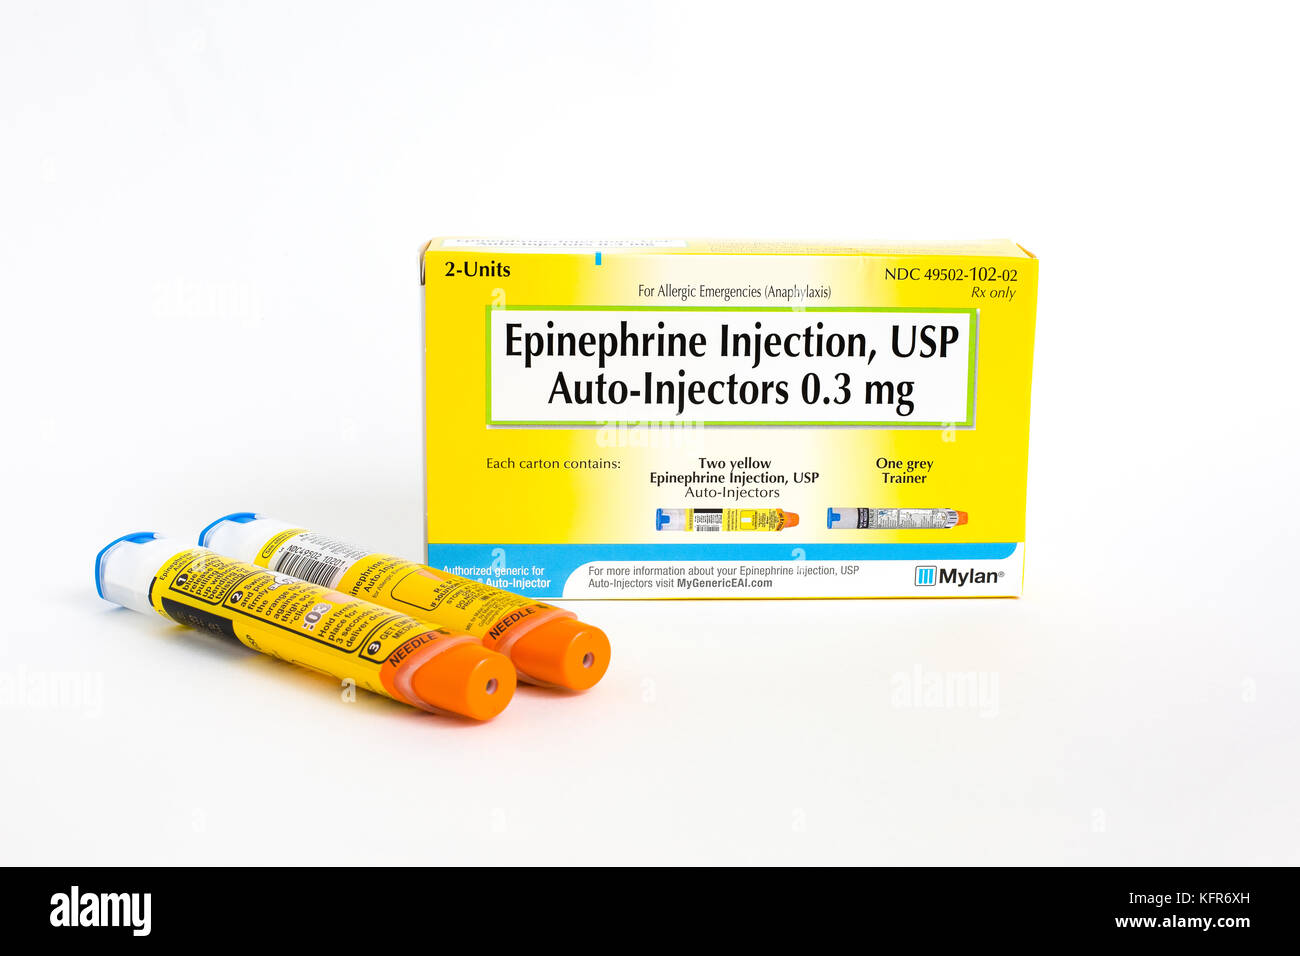 SAINT LOUIS, USA - 18. Oktober 2017: Mylan Allgemeine Verpackung von zwei EpiPen auto-Injektoren zur Behandlung allergischer Reaktionen verwendet. Stockfoto